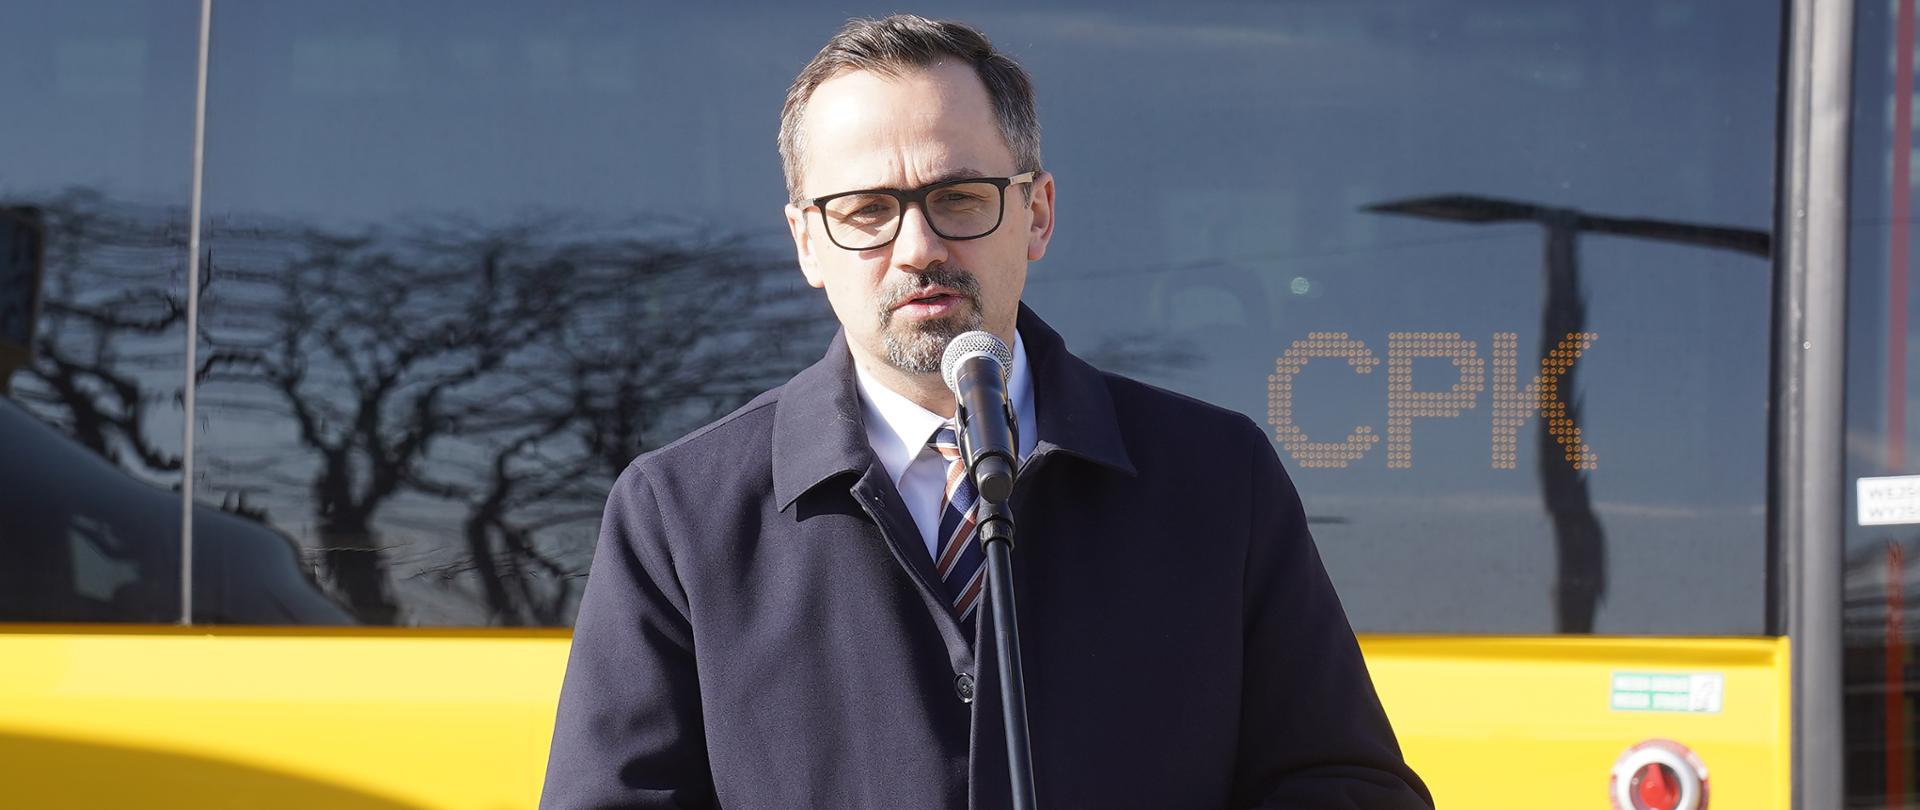 Wiceminister Marcin Horała stoi i mówi do mikrofonu. W tle za jego plecami stoi żółty autobus z ciemną, szklaną szybą.